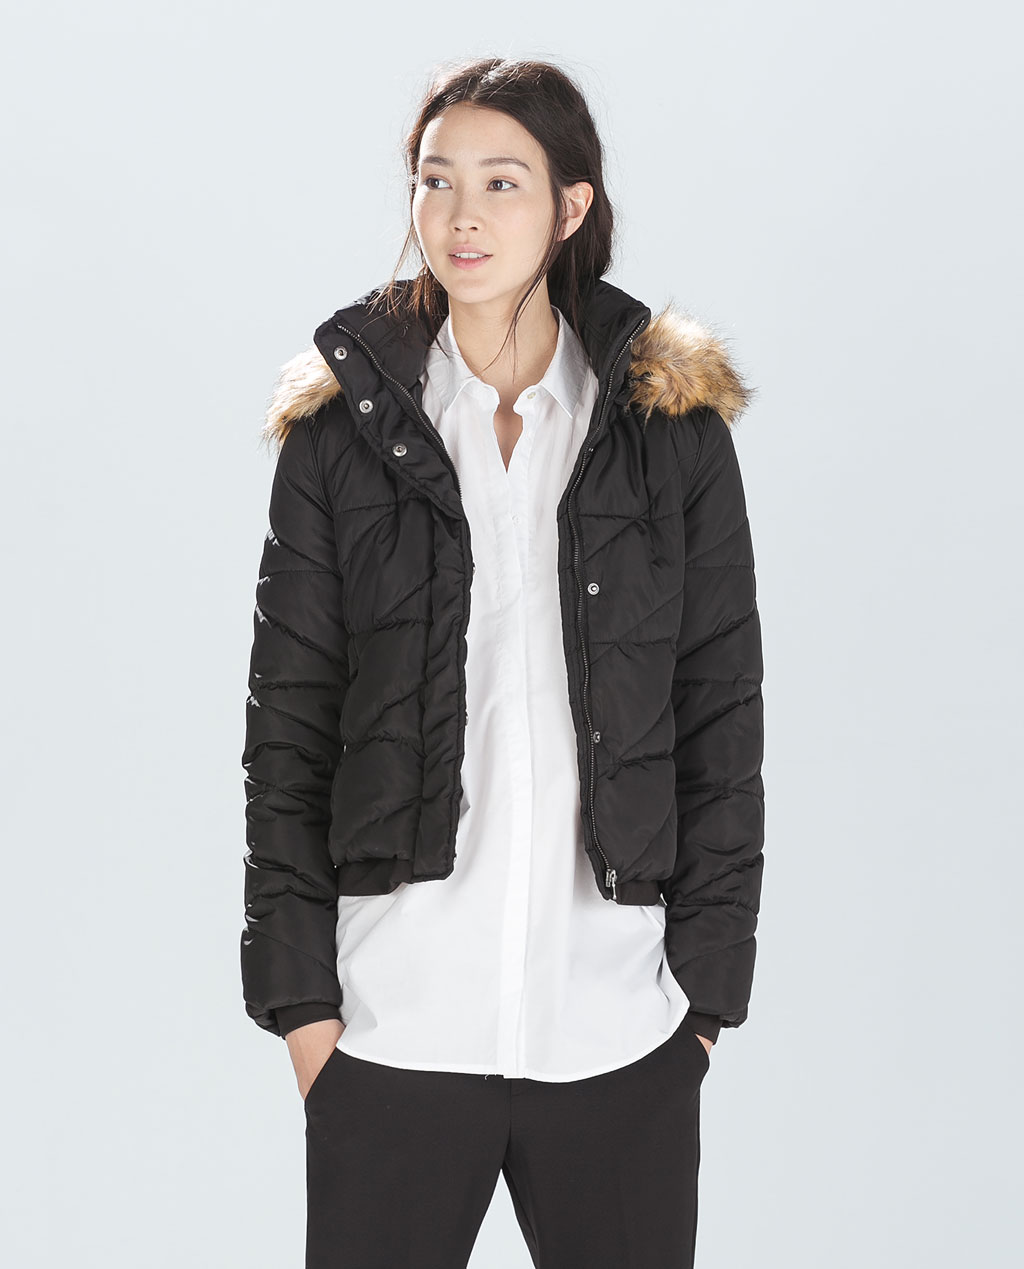 Zara chaquetas low cost tendencia